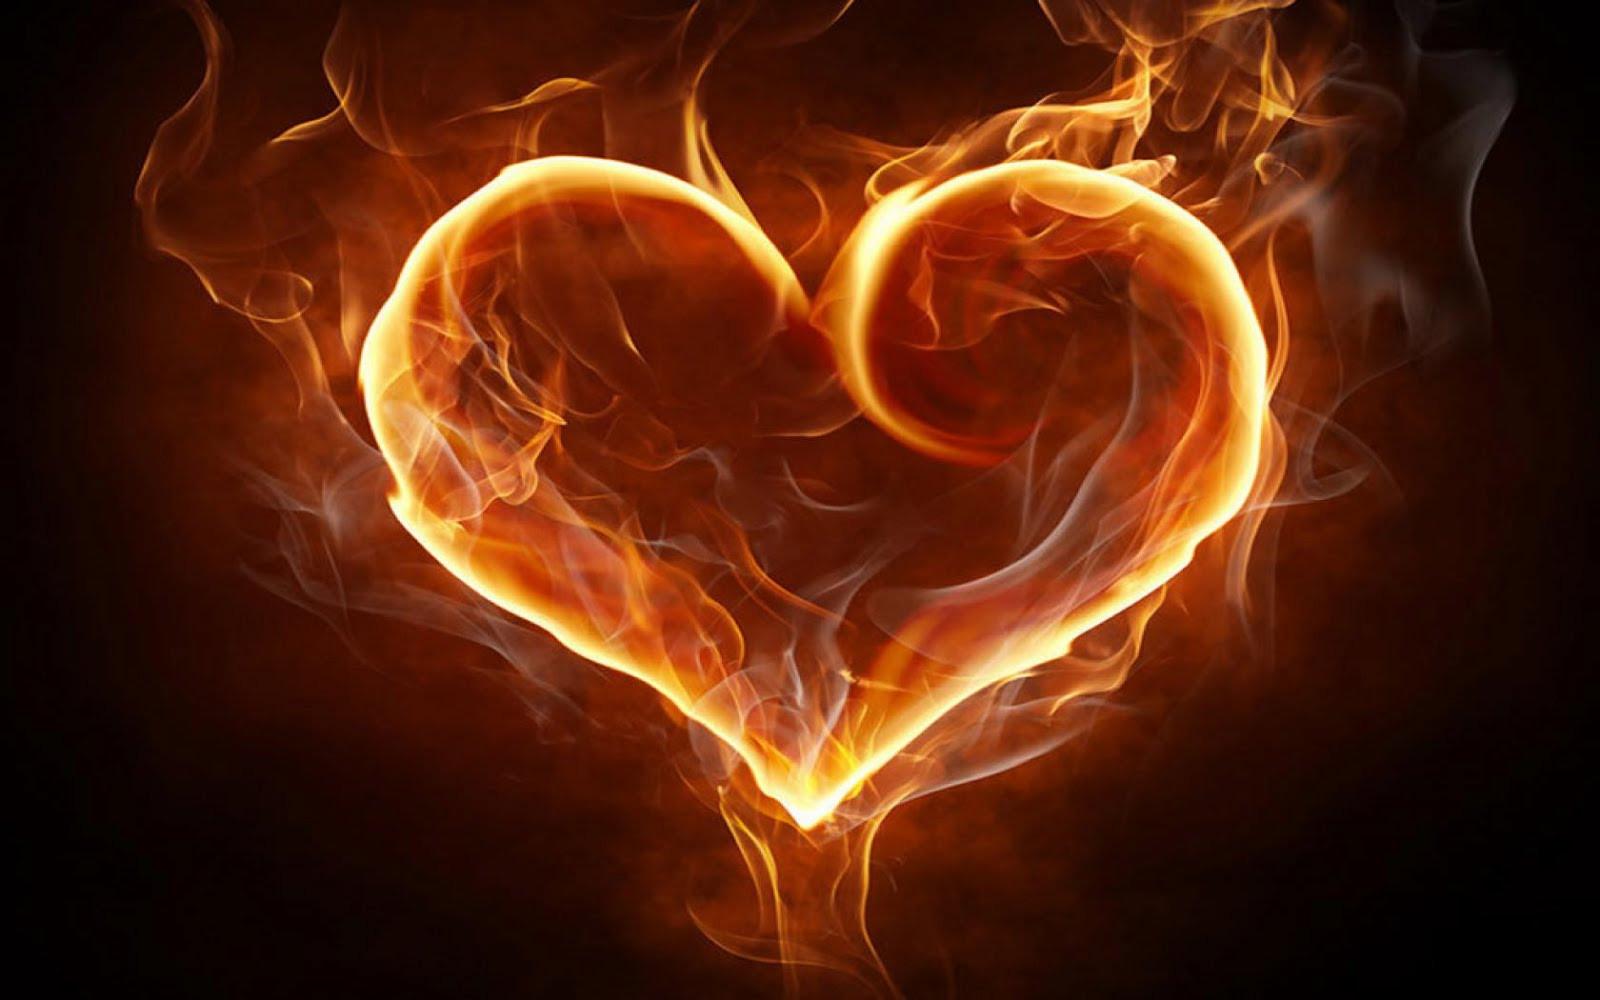 Đọc hiểu Ngọn lửa, Trái tim có điều kì diệu (3 đề)